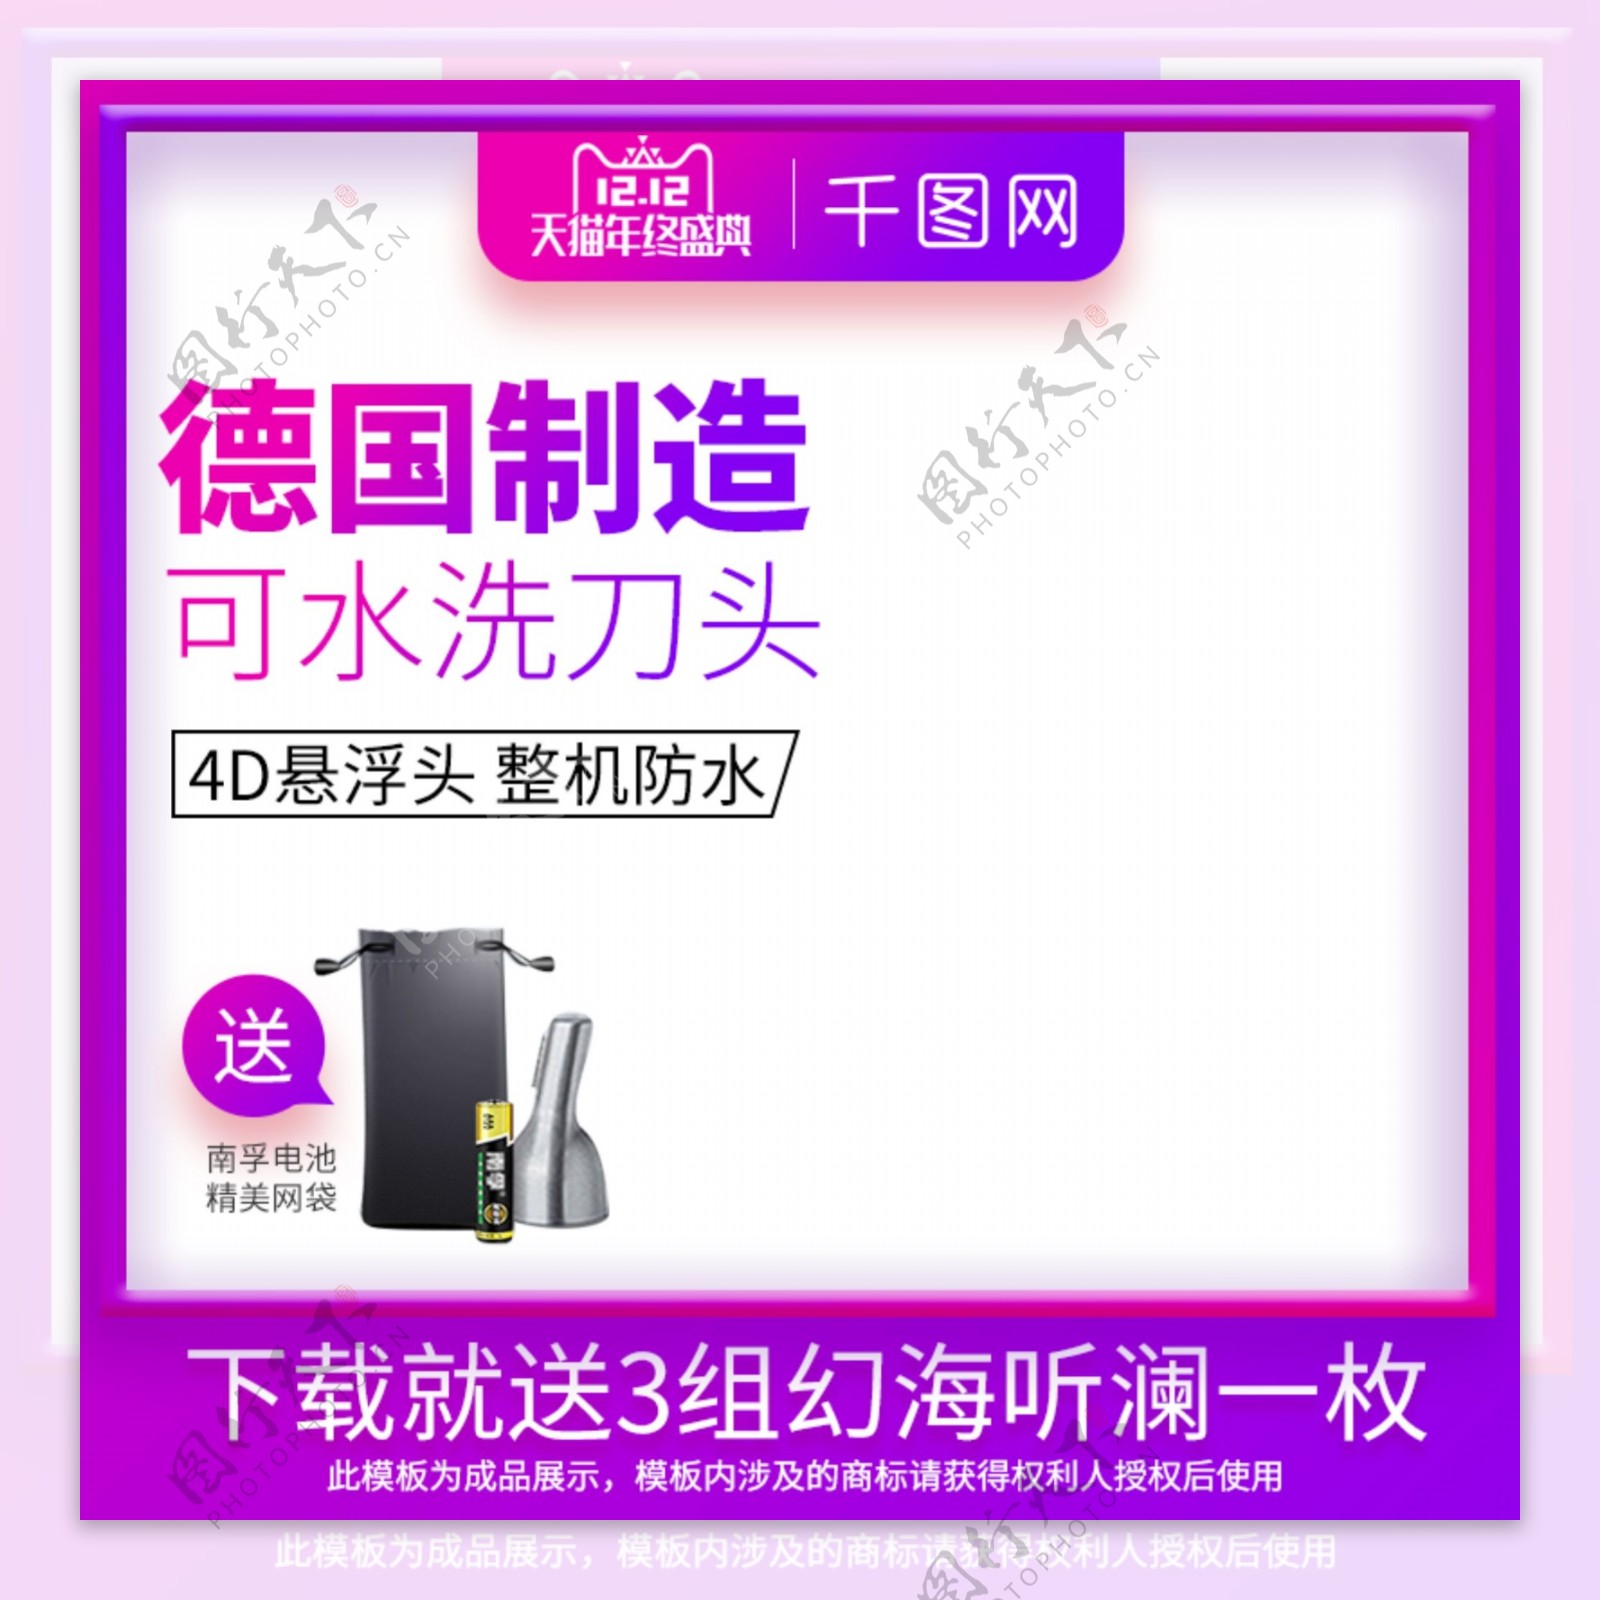 淘宝天猫紫色幻彩双十二白底促销电器主图